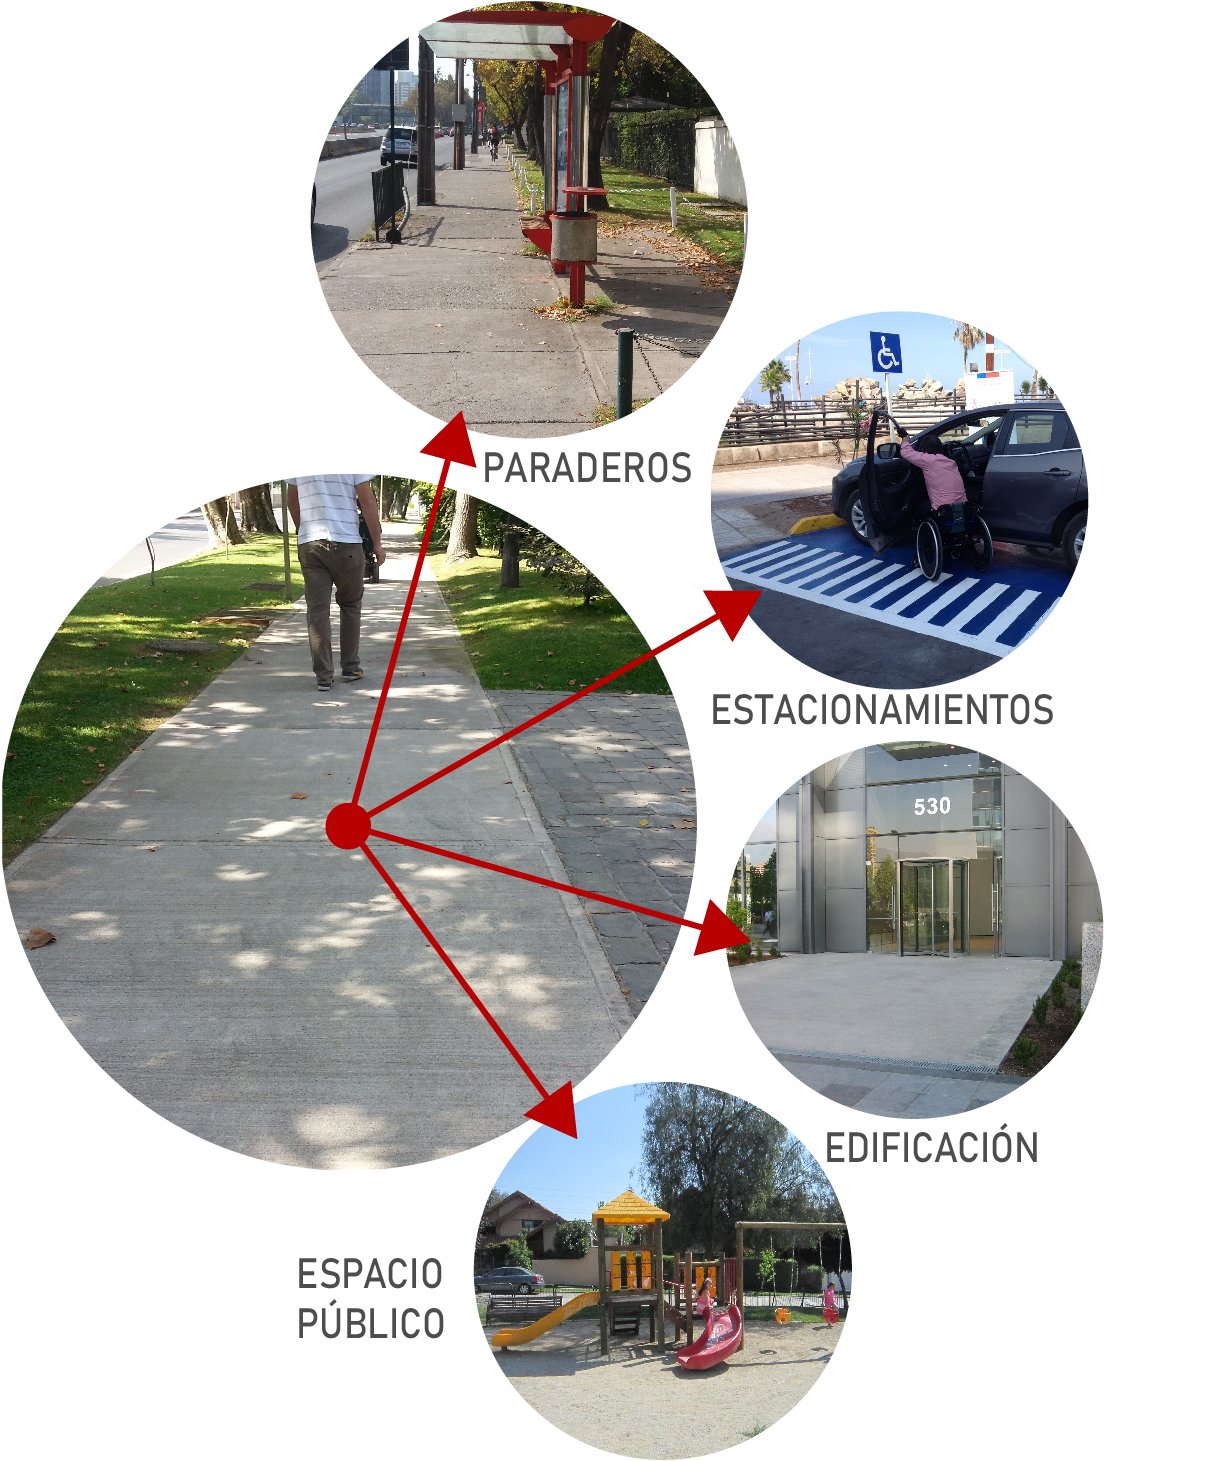 imagen circular de una vereda que apunta hacia otras imagenes de paraderos, estacionamientos, edificación y espacio público